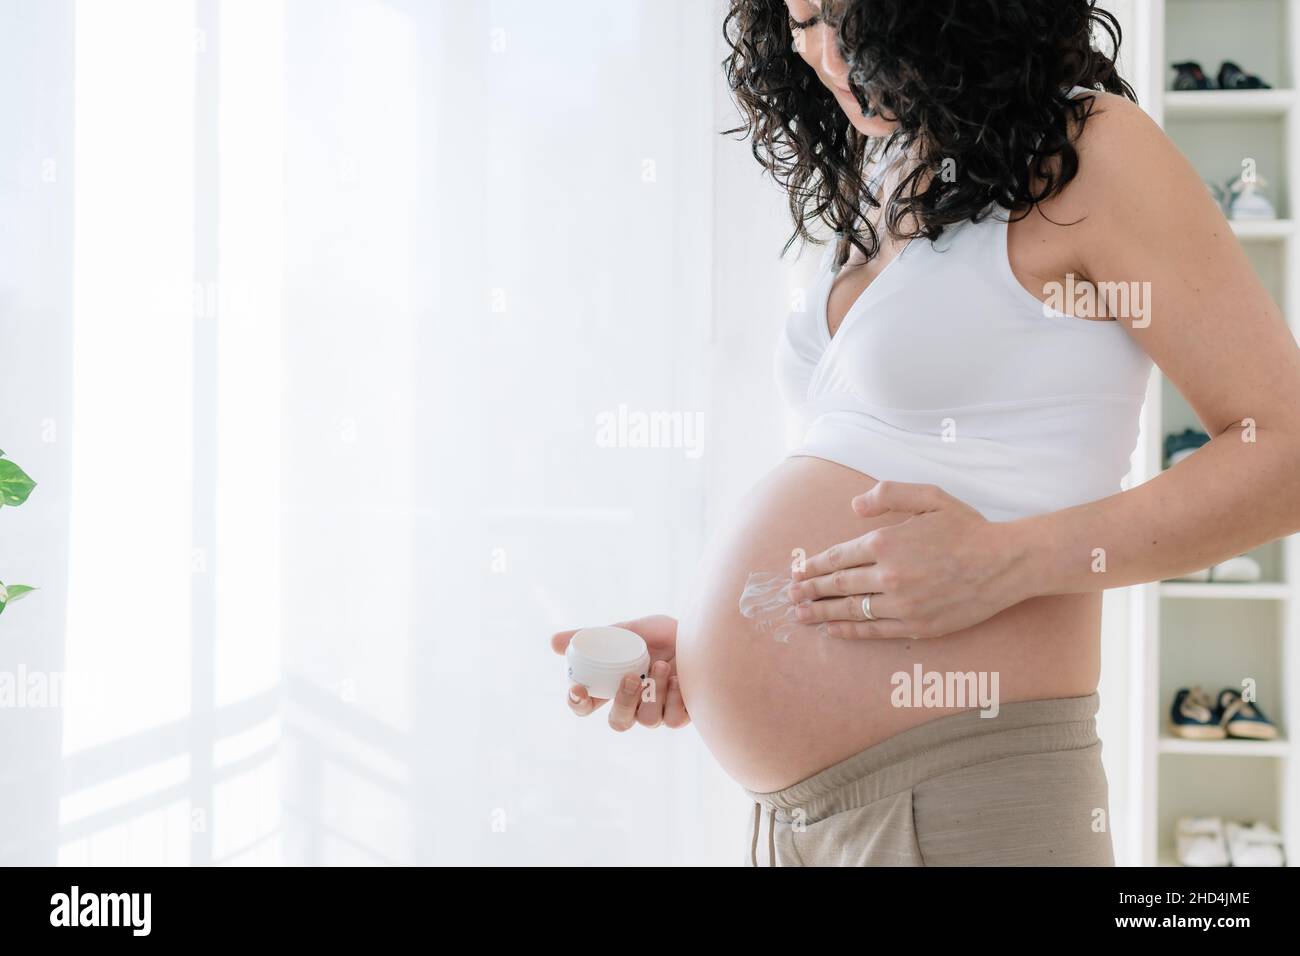 Jeune jolie femme enceinte avec des cheveux bouclés hydratant de mise sur son ventre pour empêcher les marques d'étirement pendant la grossesse.fond blanc. Espace de copie Banque D'Images